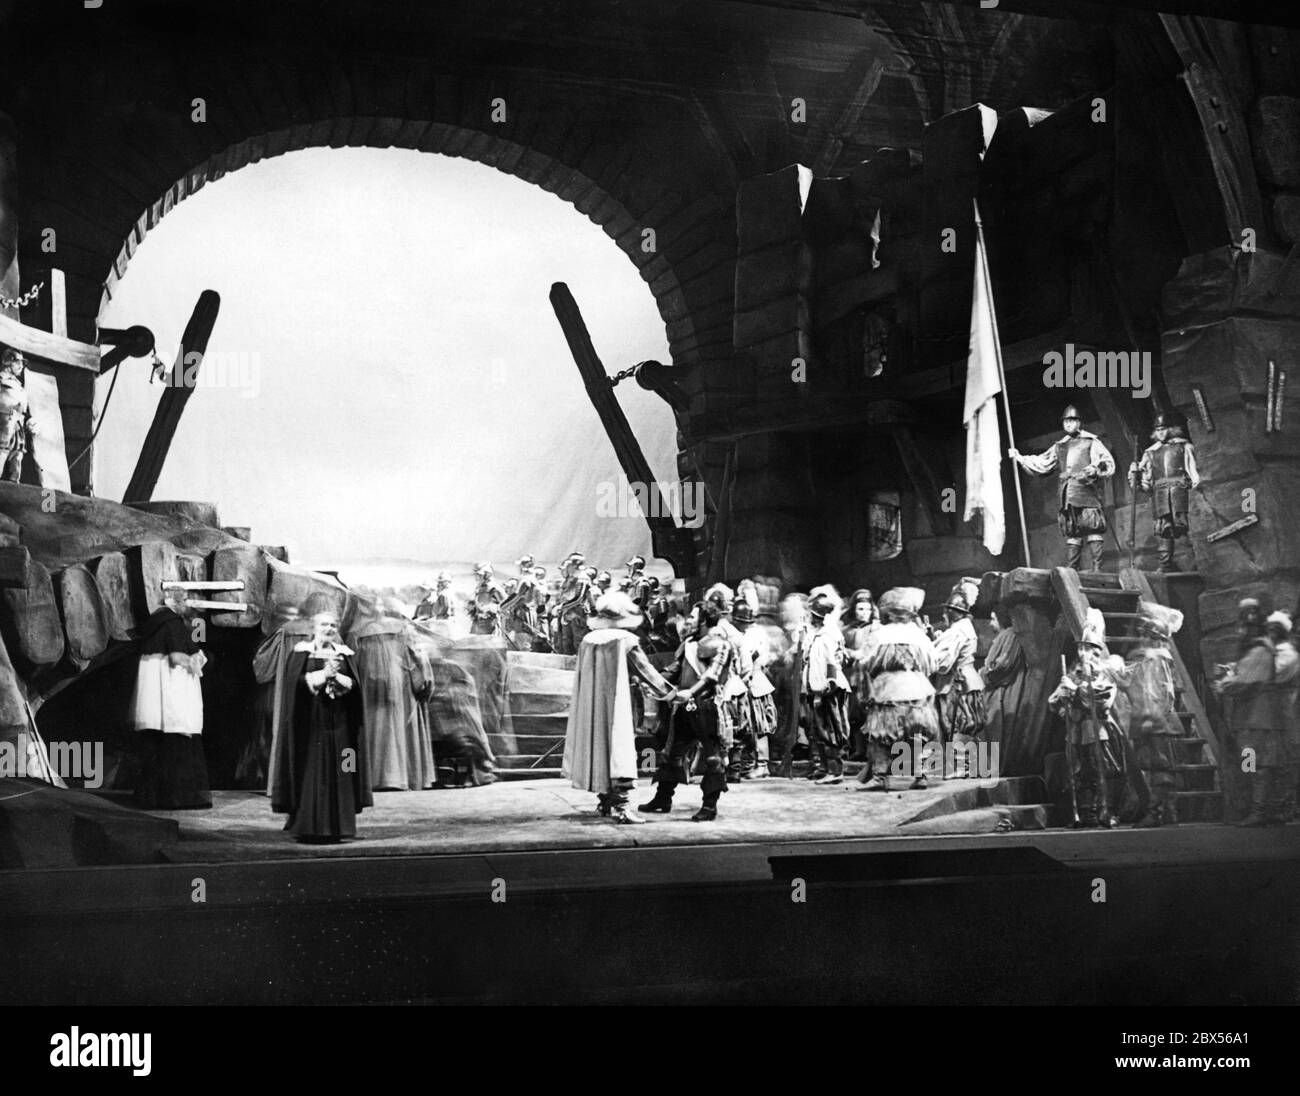 Foto di chiusura dell'opera 'Friedenstag' (Giornata della Pace) del compositore Richard Strauss allo Staatsoper 'Unter den Linden' di Berlino. Foto Stock